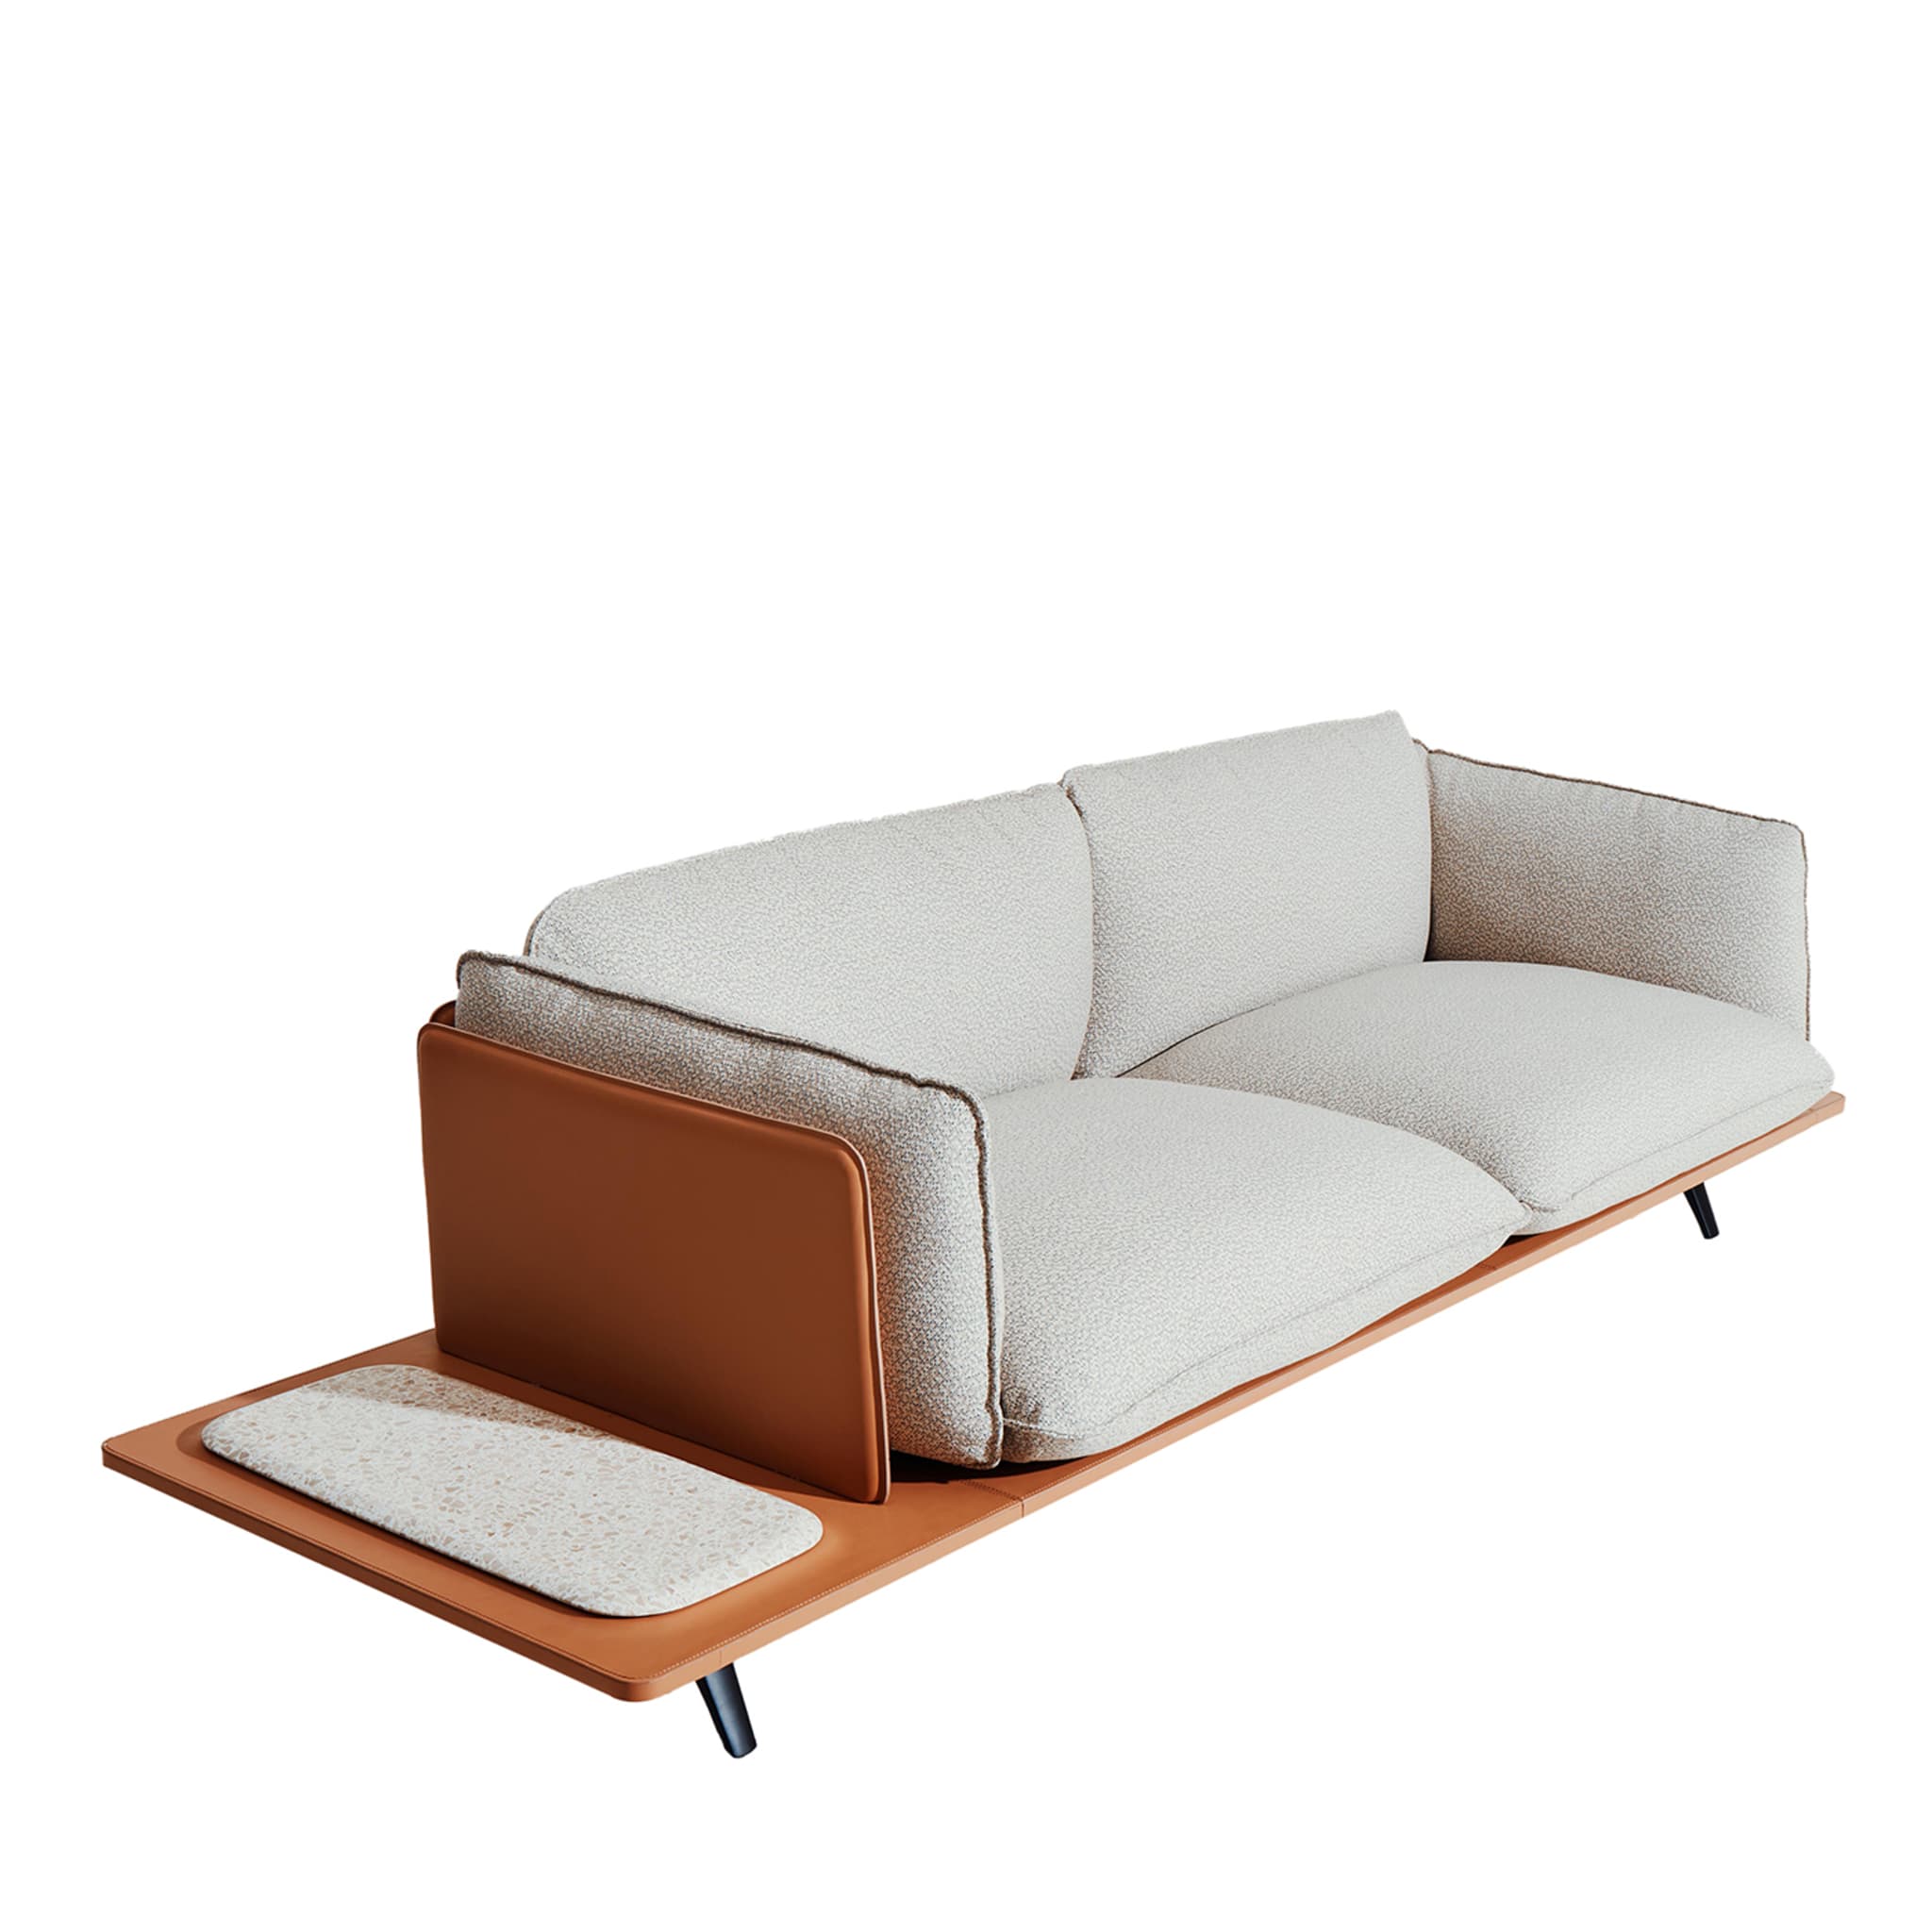 Sahara 2-Seater Sofa by Noé Duchaufour-Lawrance - Main view